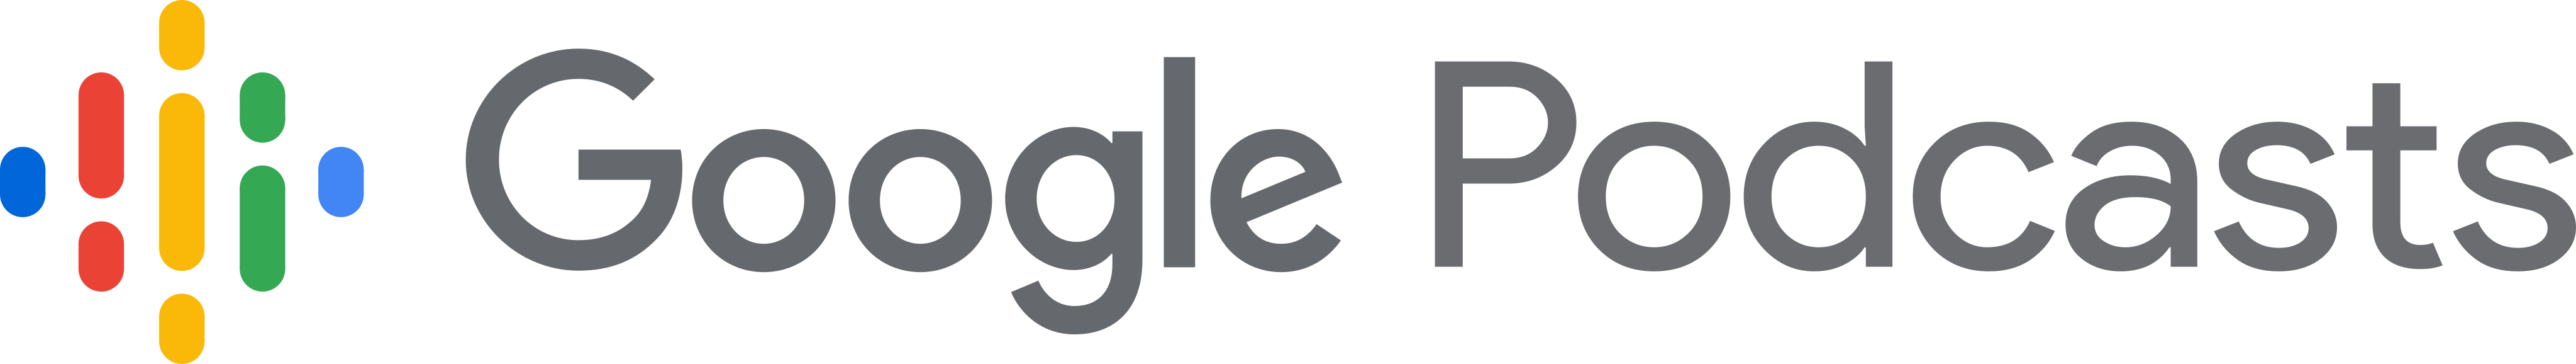 google podcasts logo - Google Podcasts Logo